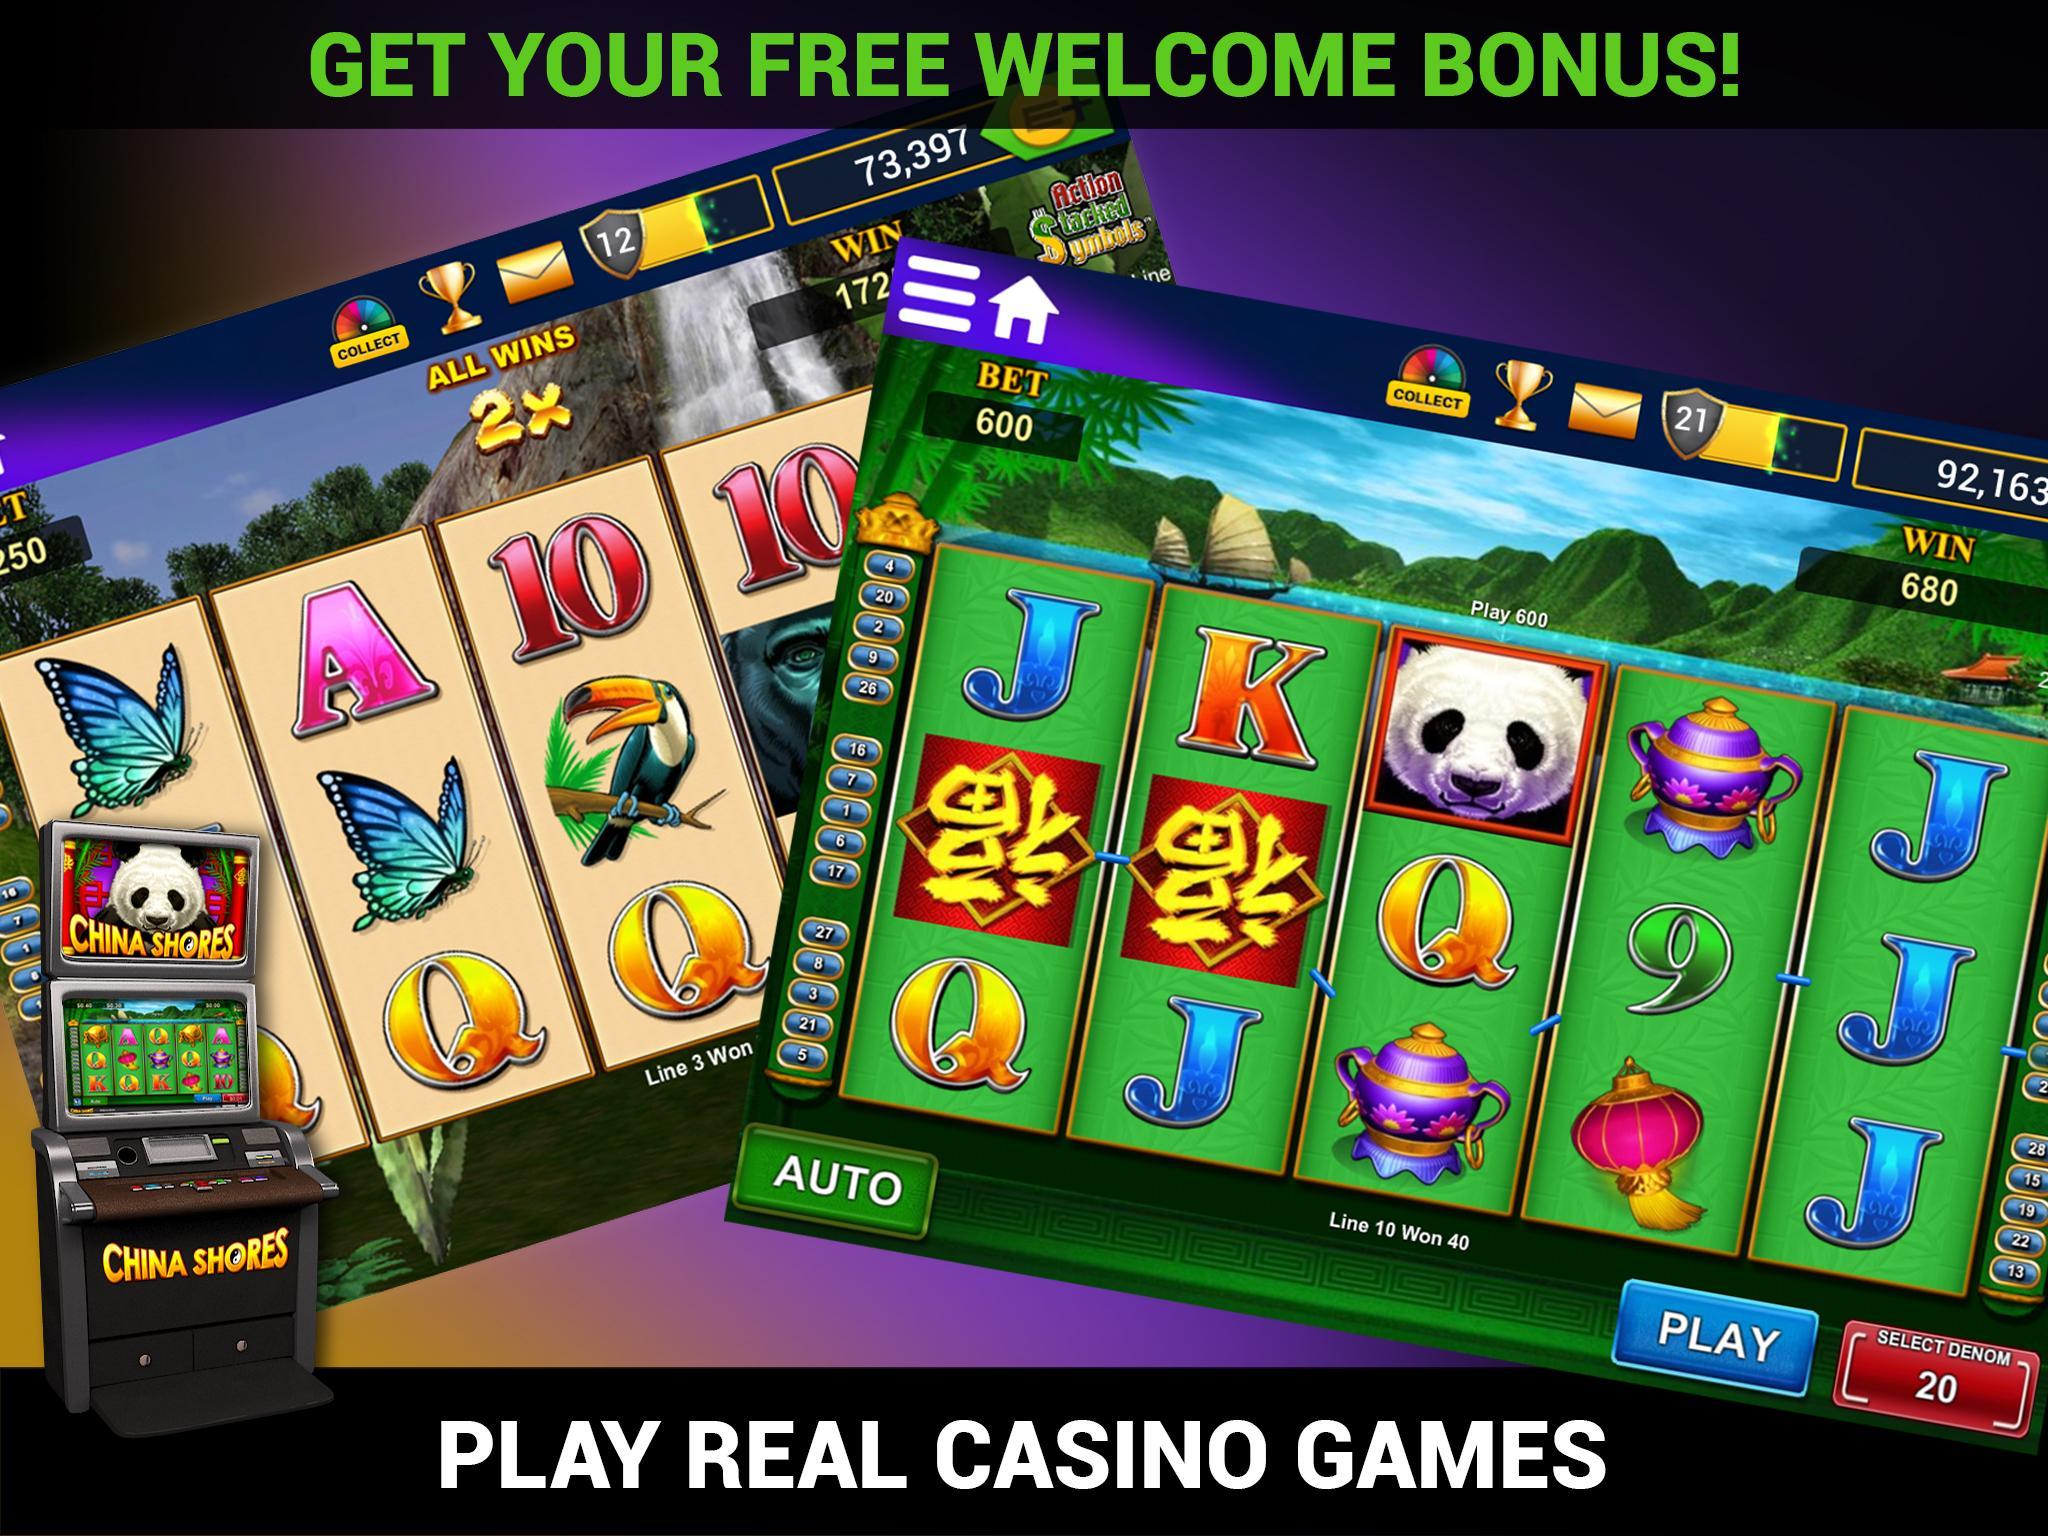 Chumba casino online gambling